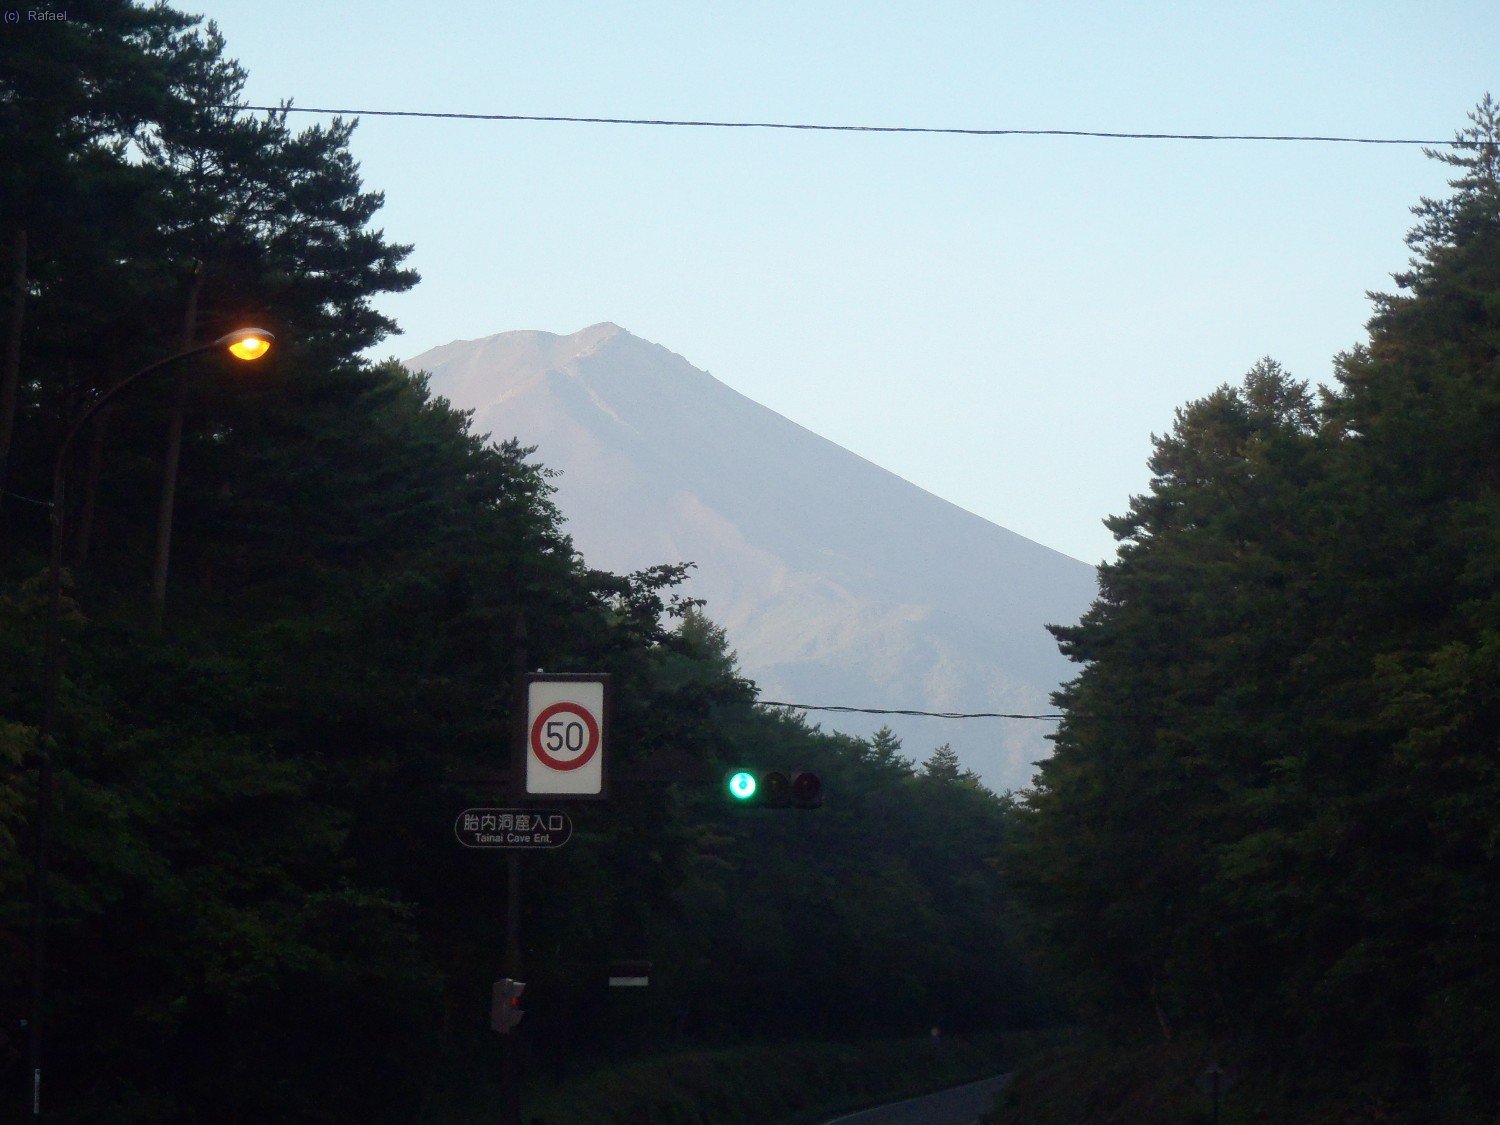 Primeras luces, el Fuji se deja ver por fin desde la población de Kawaguchiko. Nos dirigimos a la 5ª estación.
La meteo nos ha dejado ver por fin al gigante.